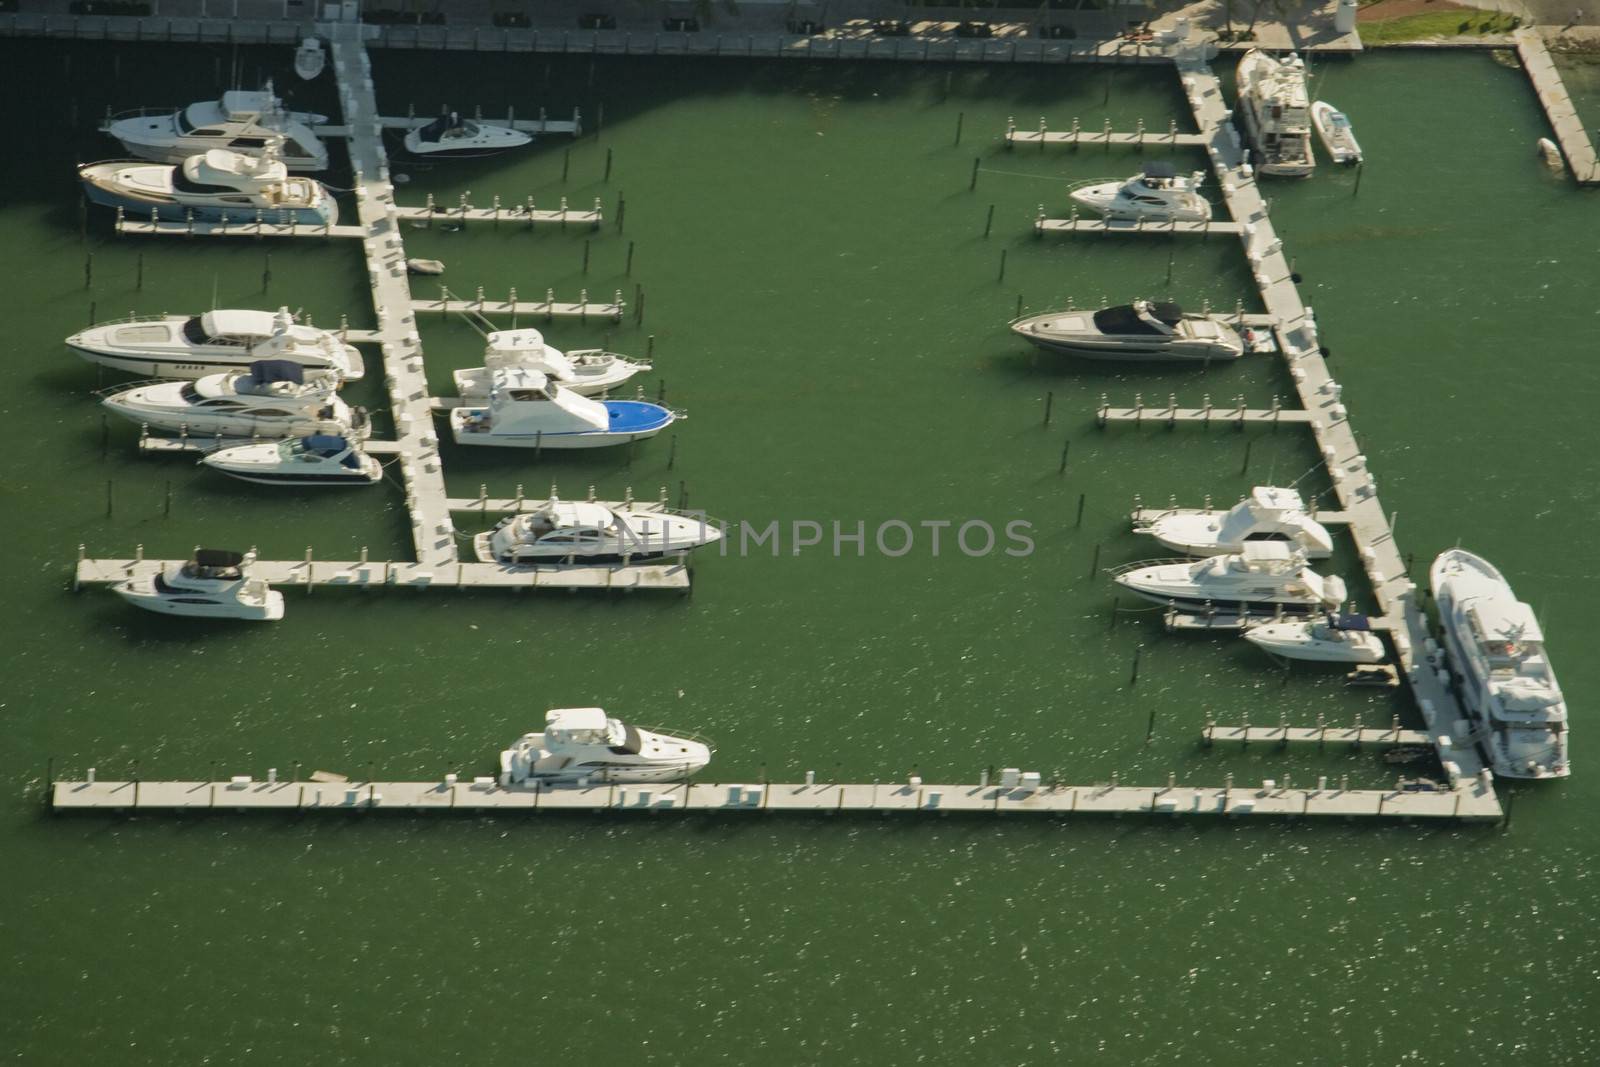 Boats in Miami marina by CelsoDiniz